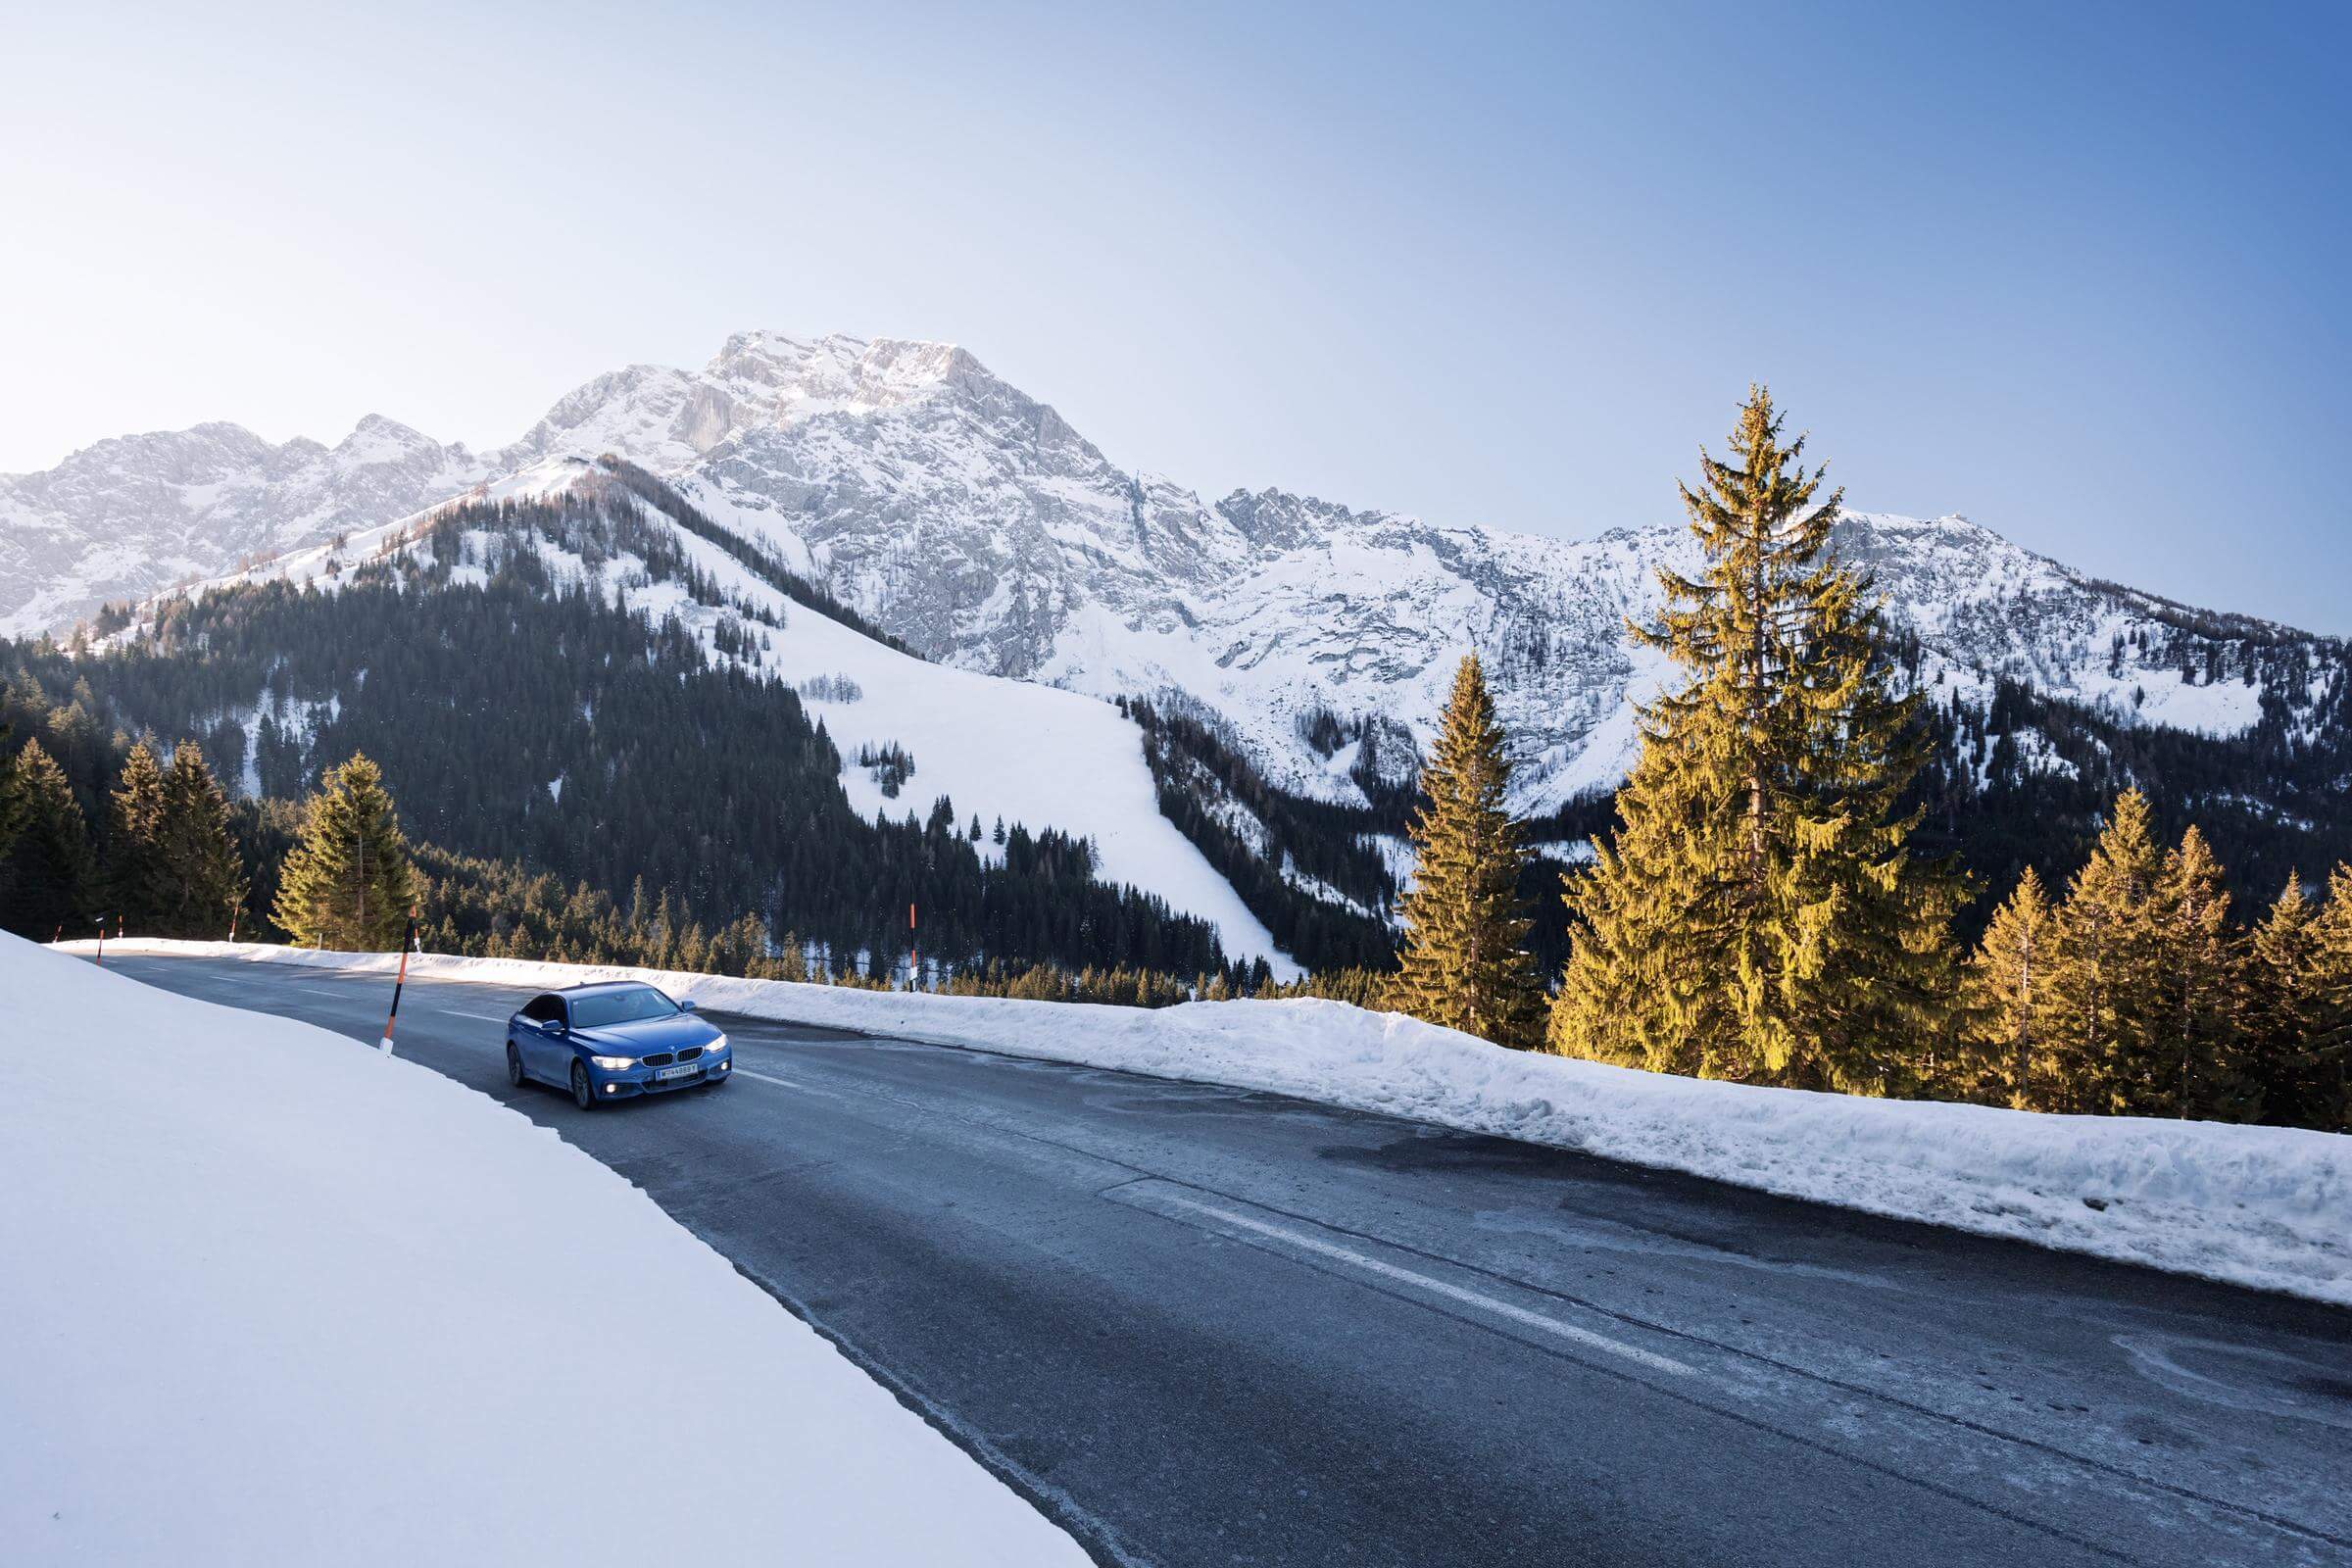 Frost, Batterie und Feuchtigkeit: Auto-Tricks für den Winter